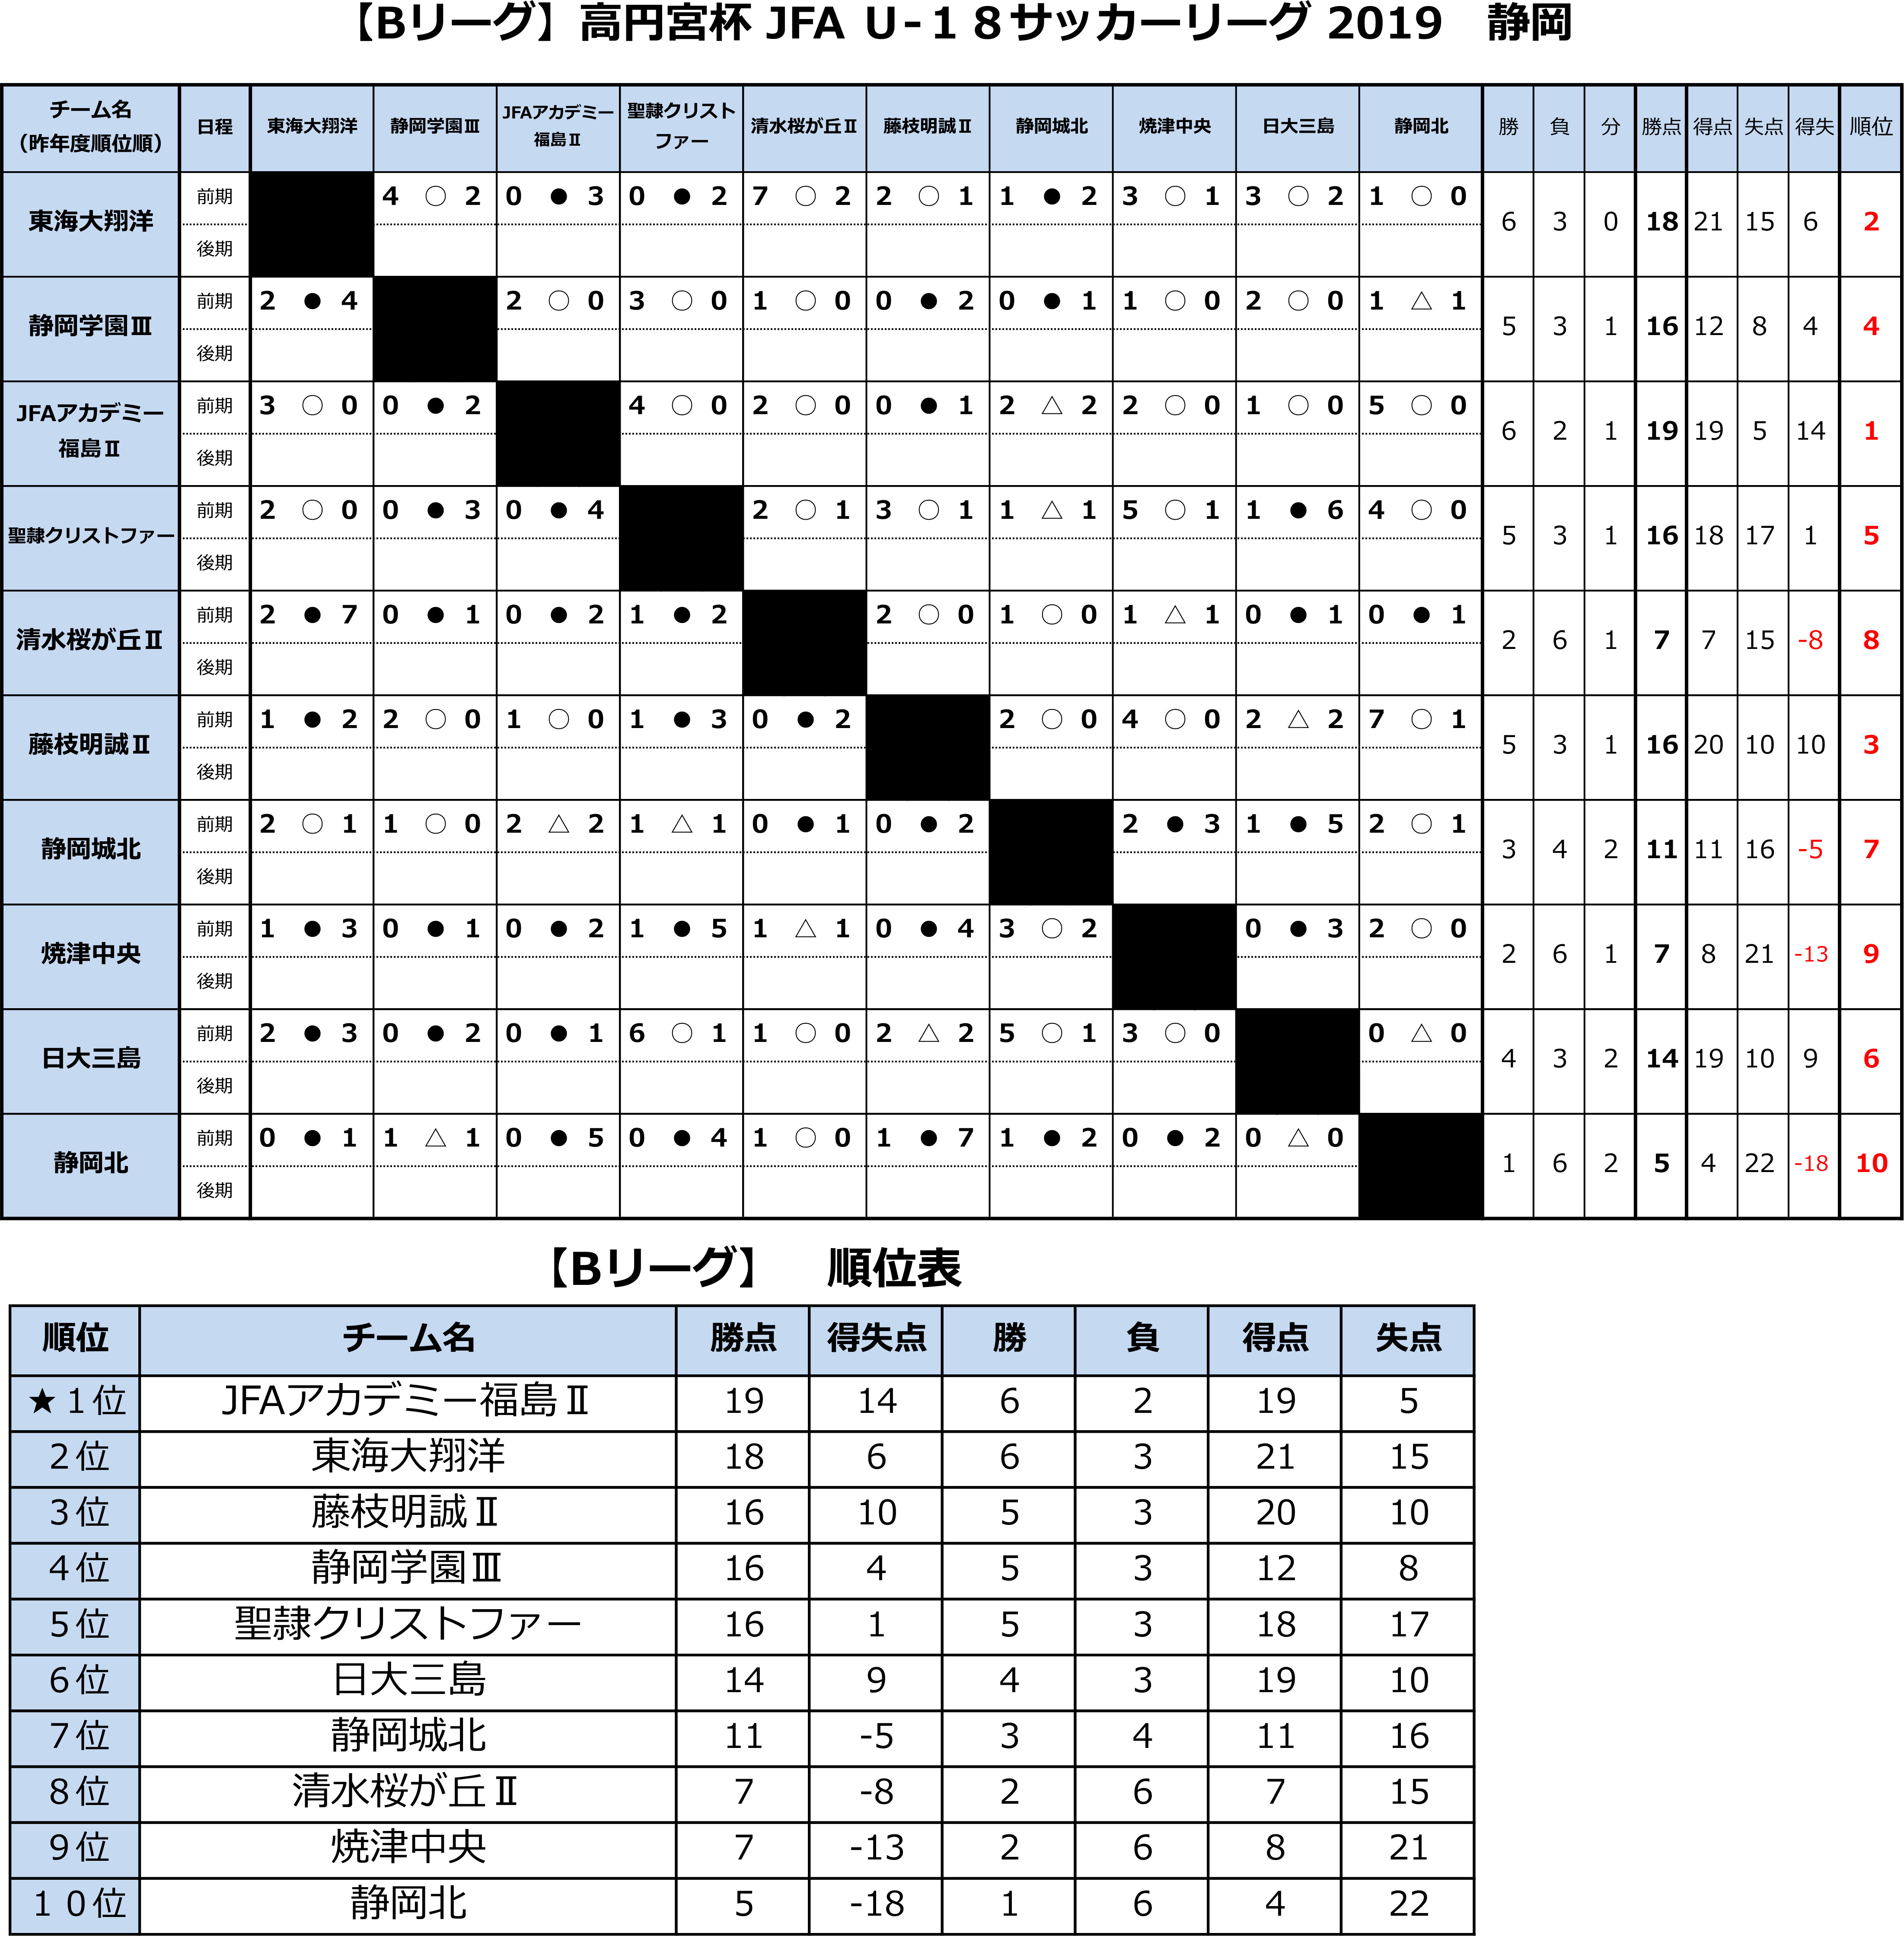 高円宮杯 JFA U-18サッカーリーグ2019 静岡 　Bリーグ前期　 トーナメント表